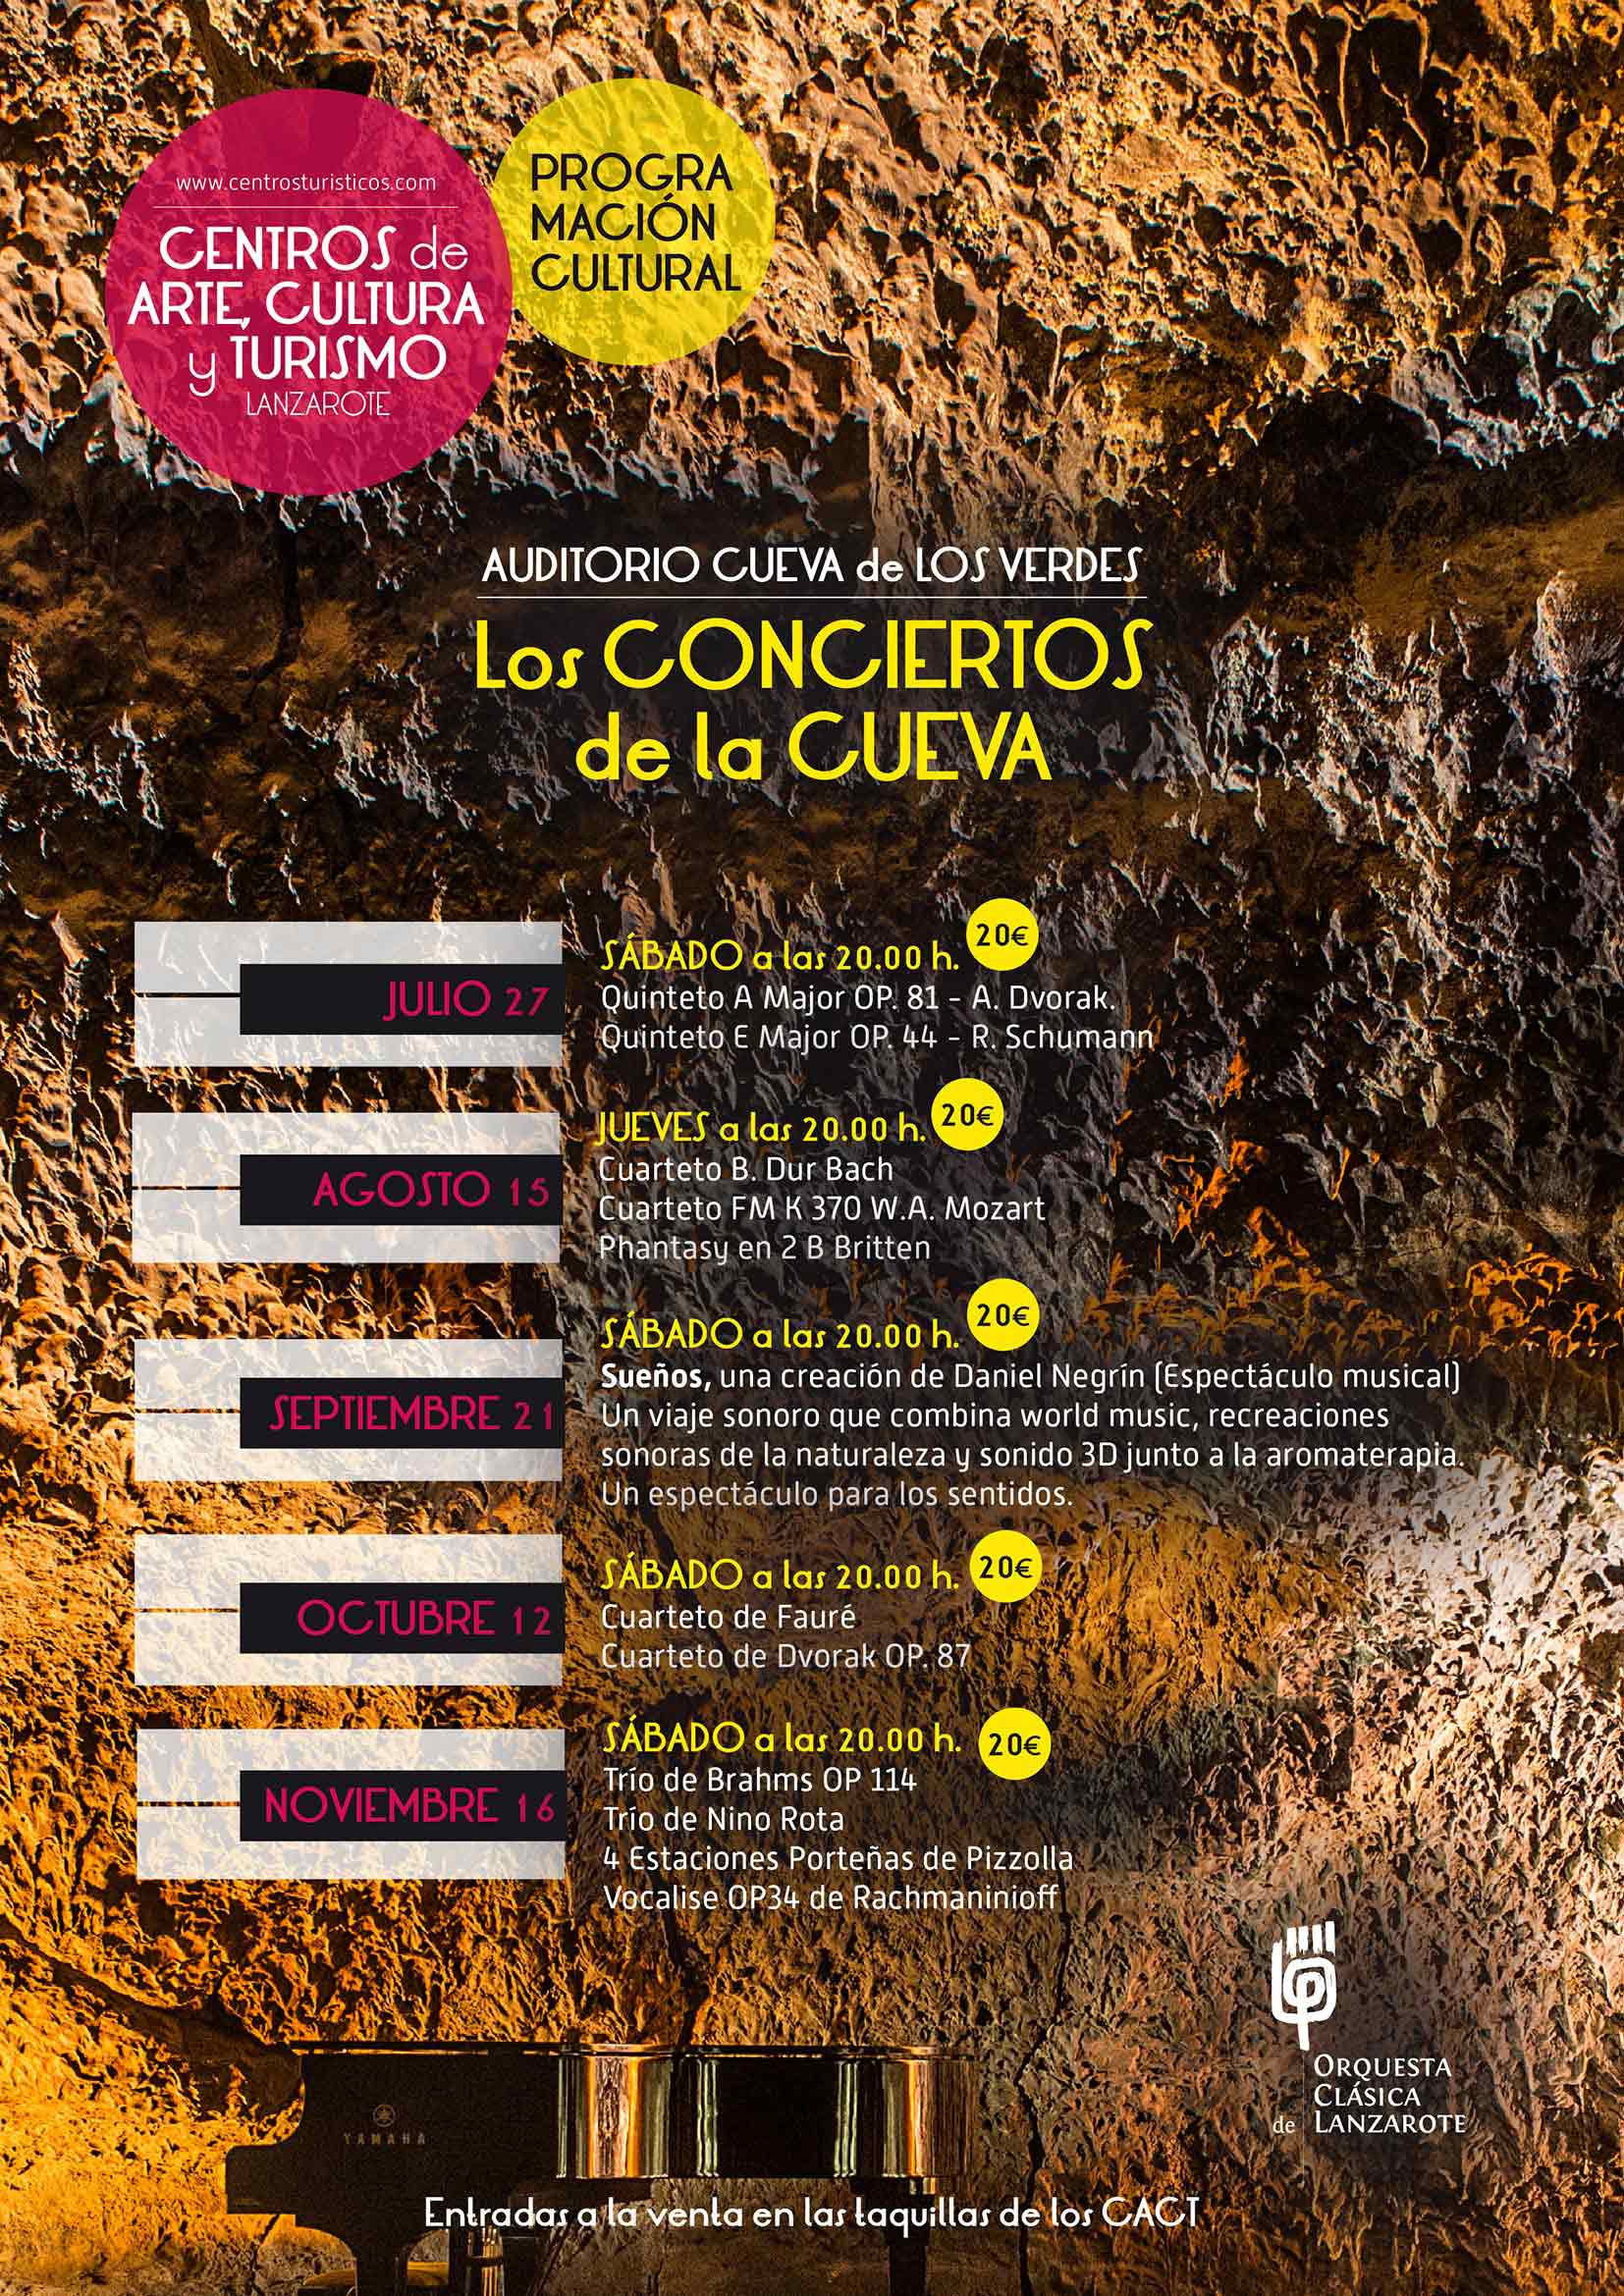 Conciertos en la Cueva de Los Verdes, musica en Lanzarote